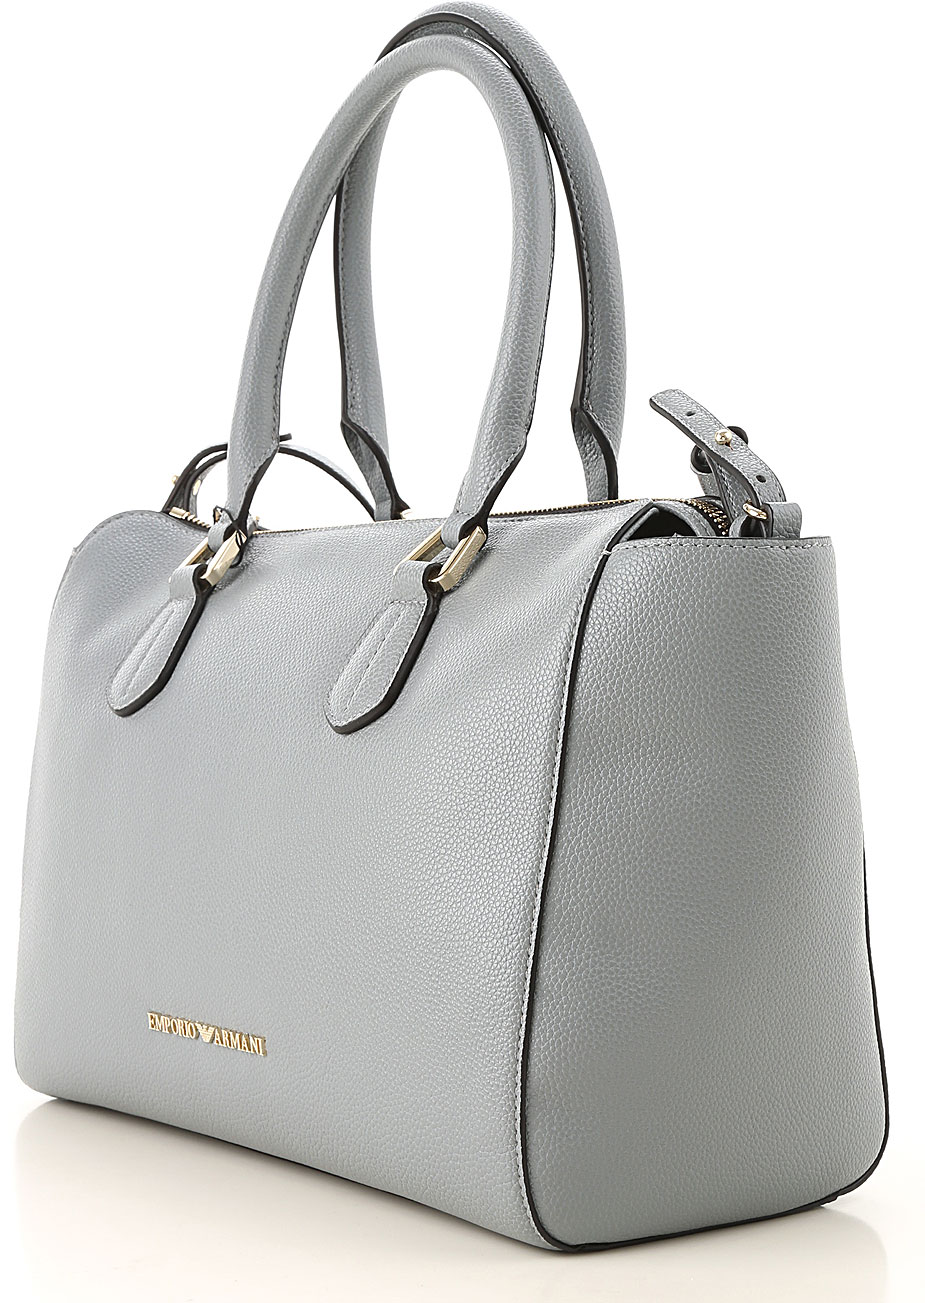 Handbags Emporio Armani, Style code: y3d137-yh65a-80155